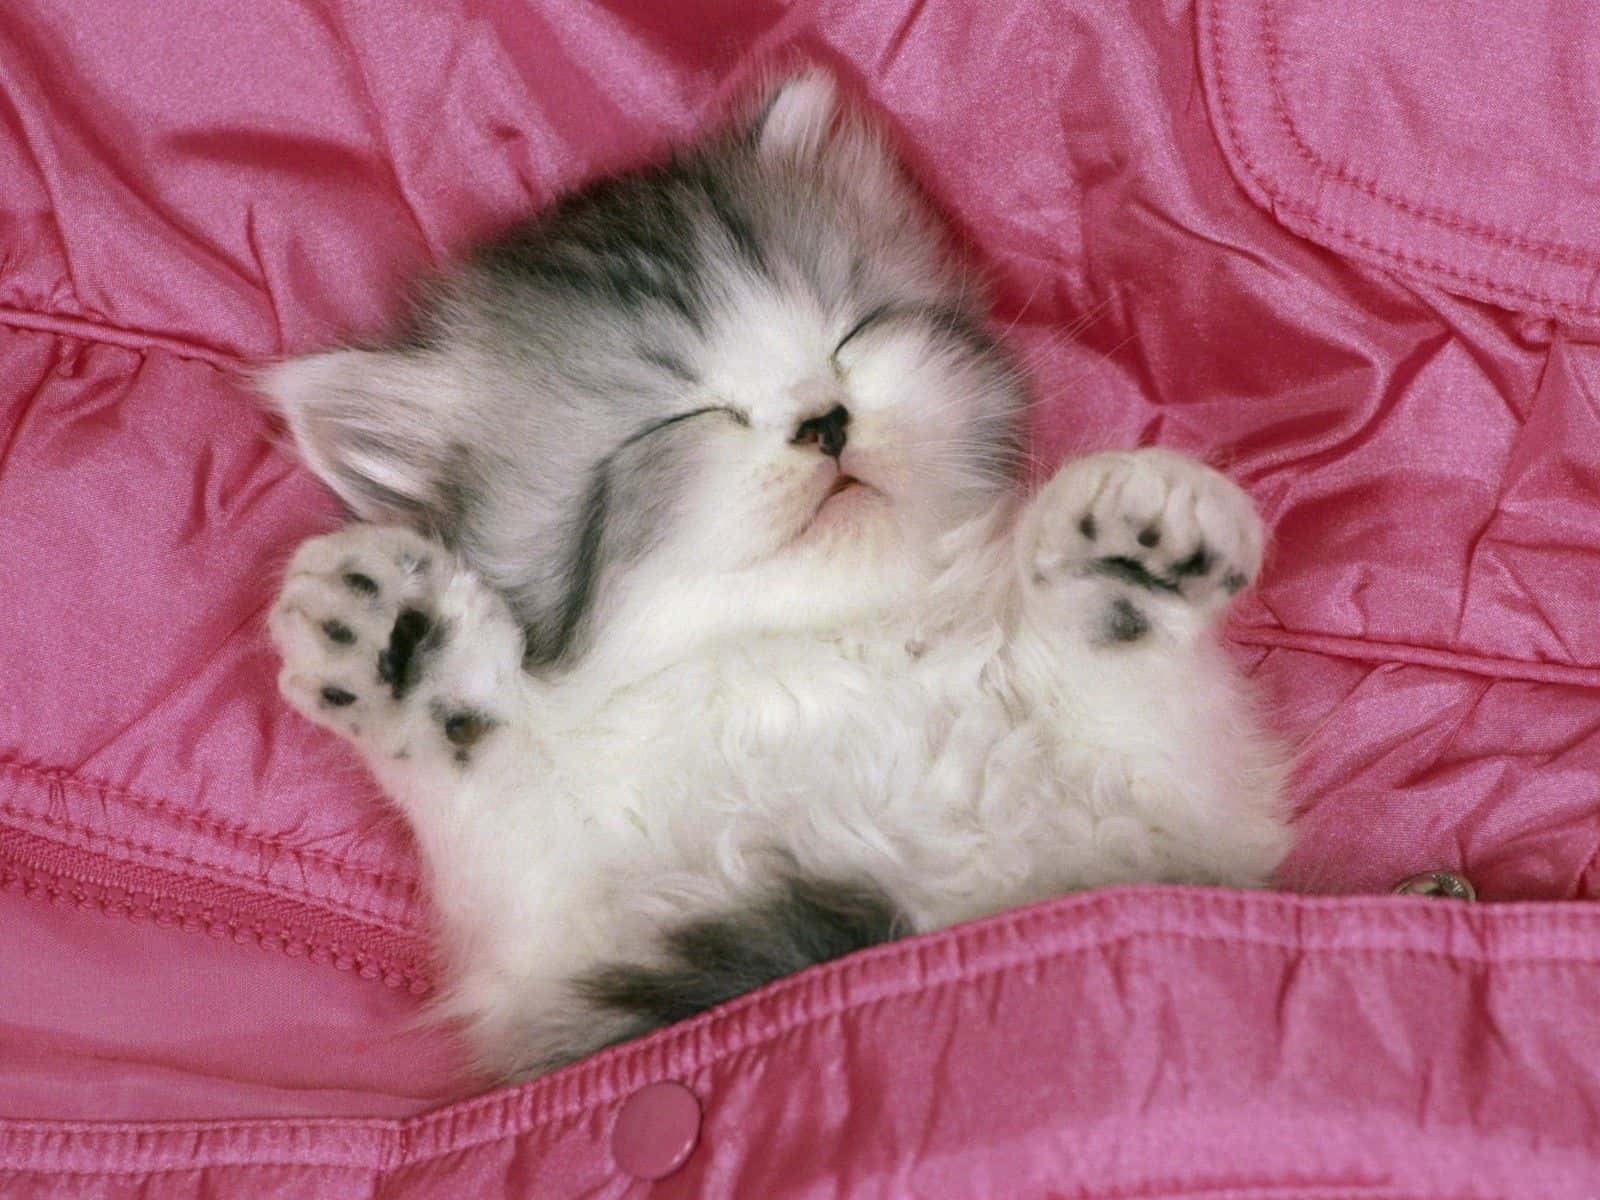 A Kitten Sleeping In A Pink Bag